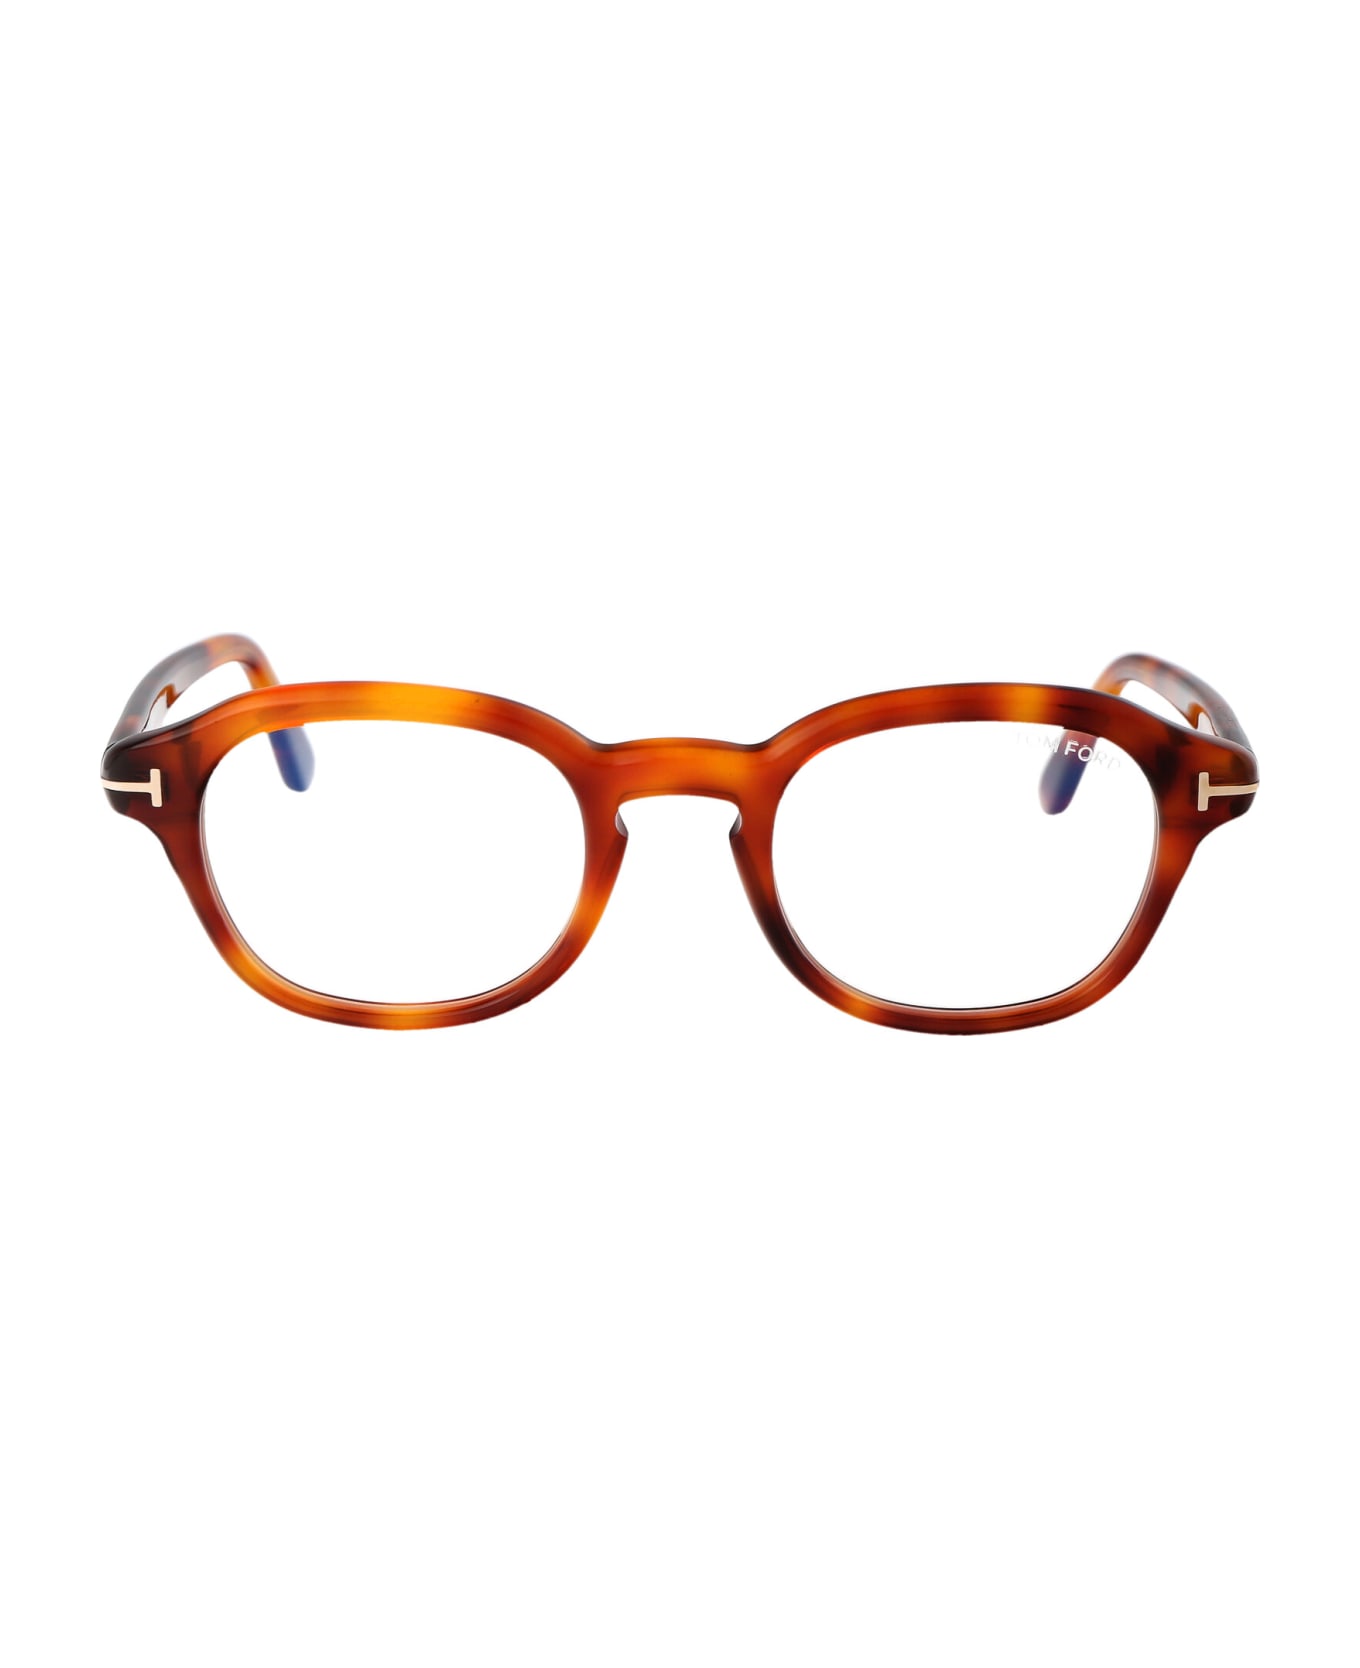 Tom Ford Eyewear Ft5871-b Glasses - 053 Avana Bionda アイウェア